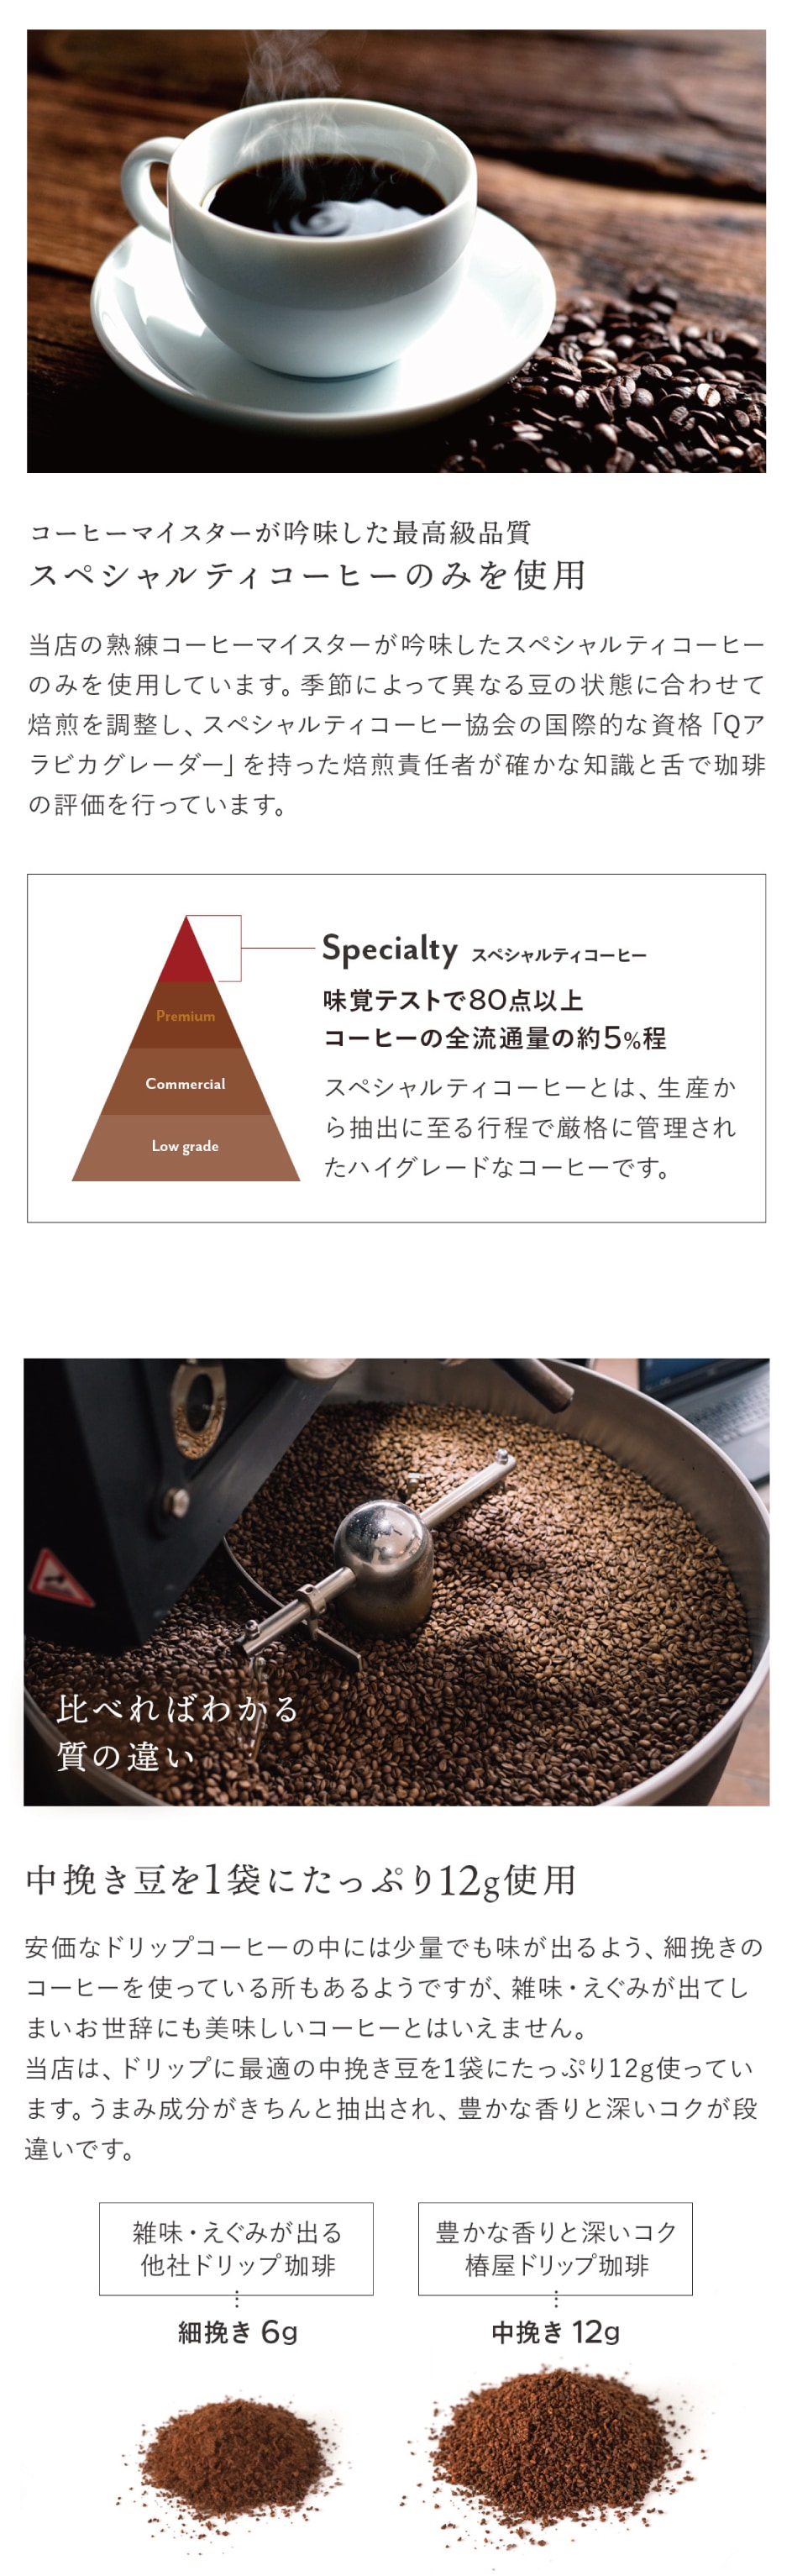 九谷焼 N53-07 ペアコーヒー 椿・桜 7.5×7.2cm 200cc 化粧箱